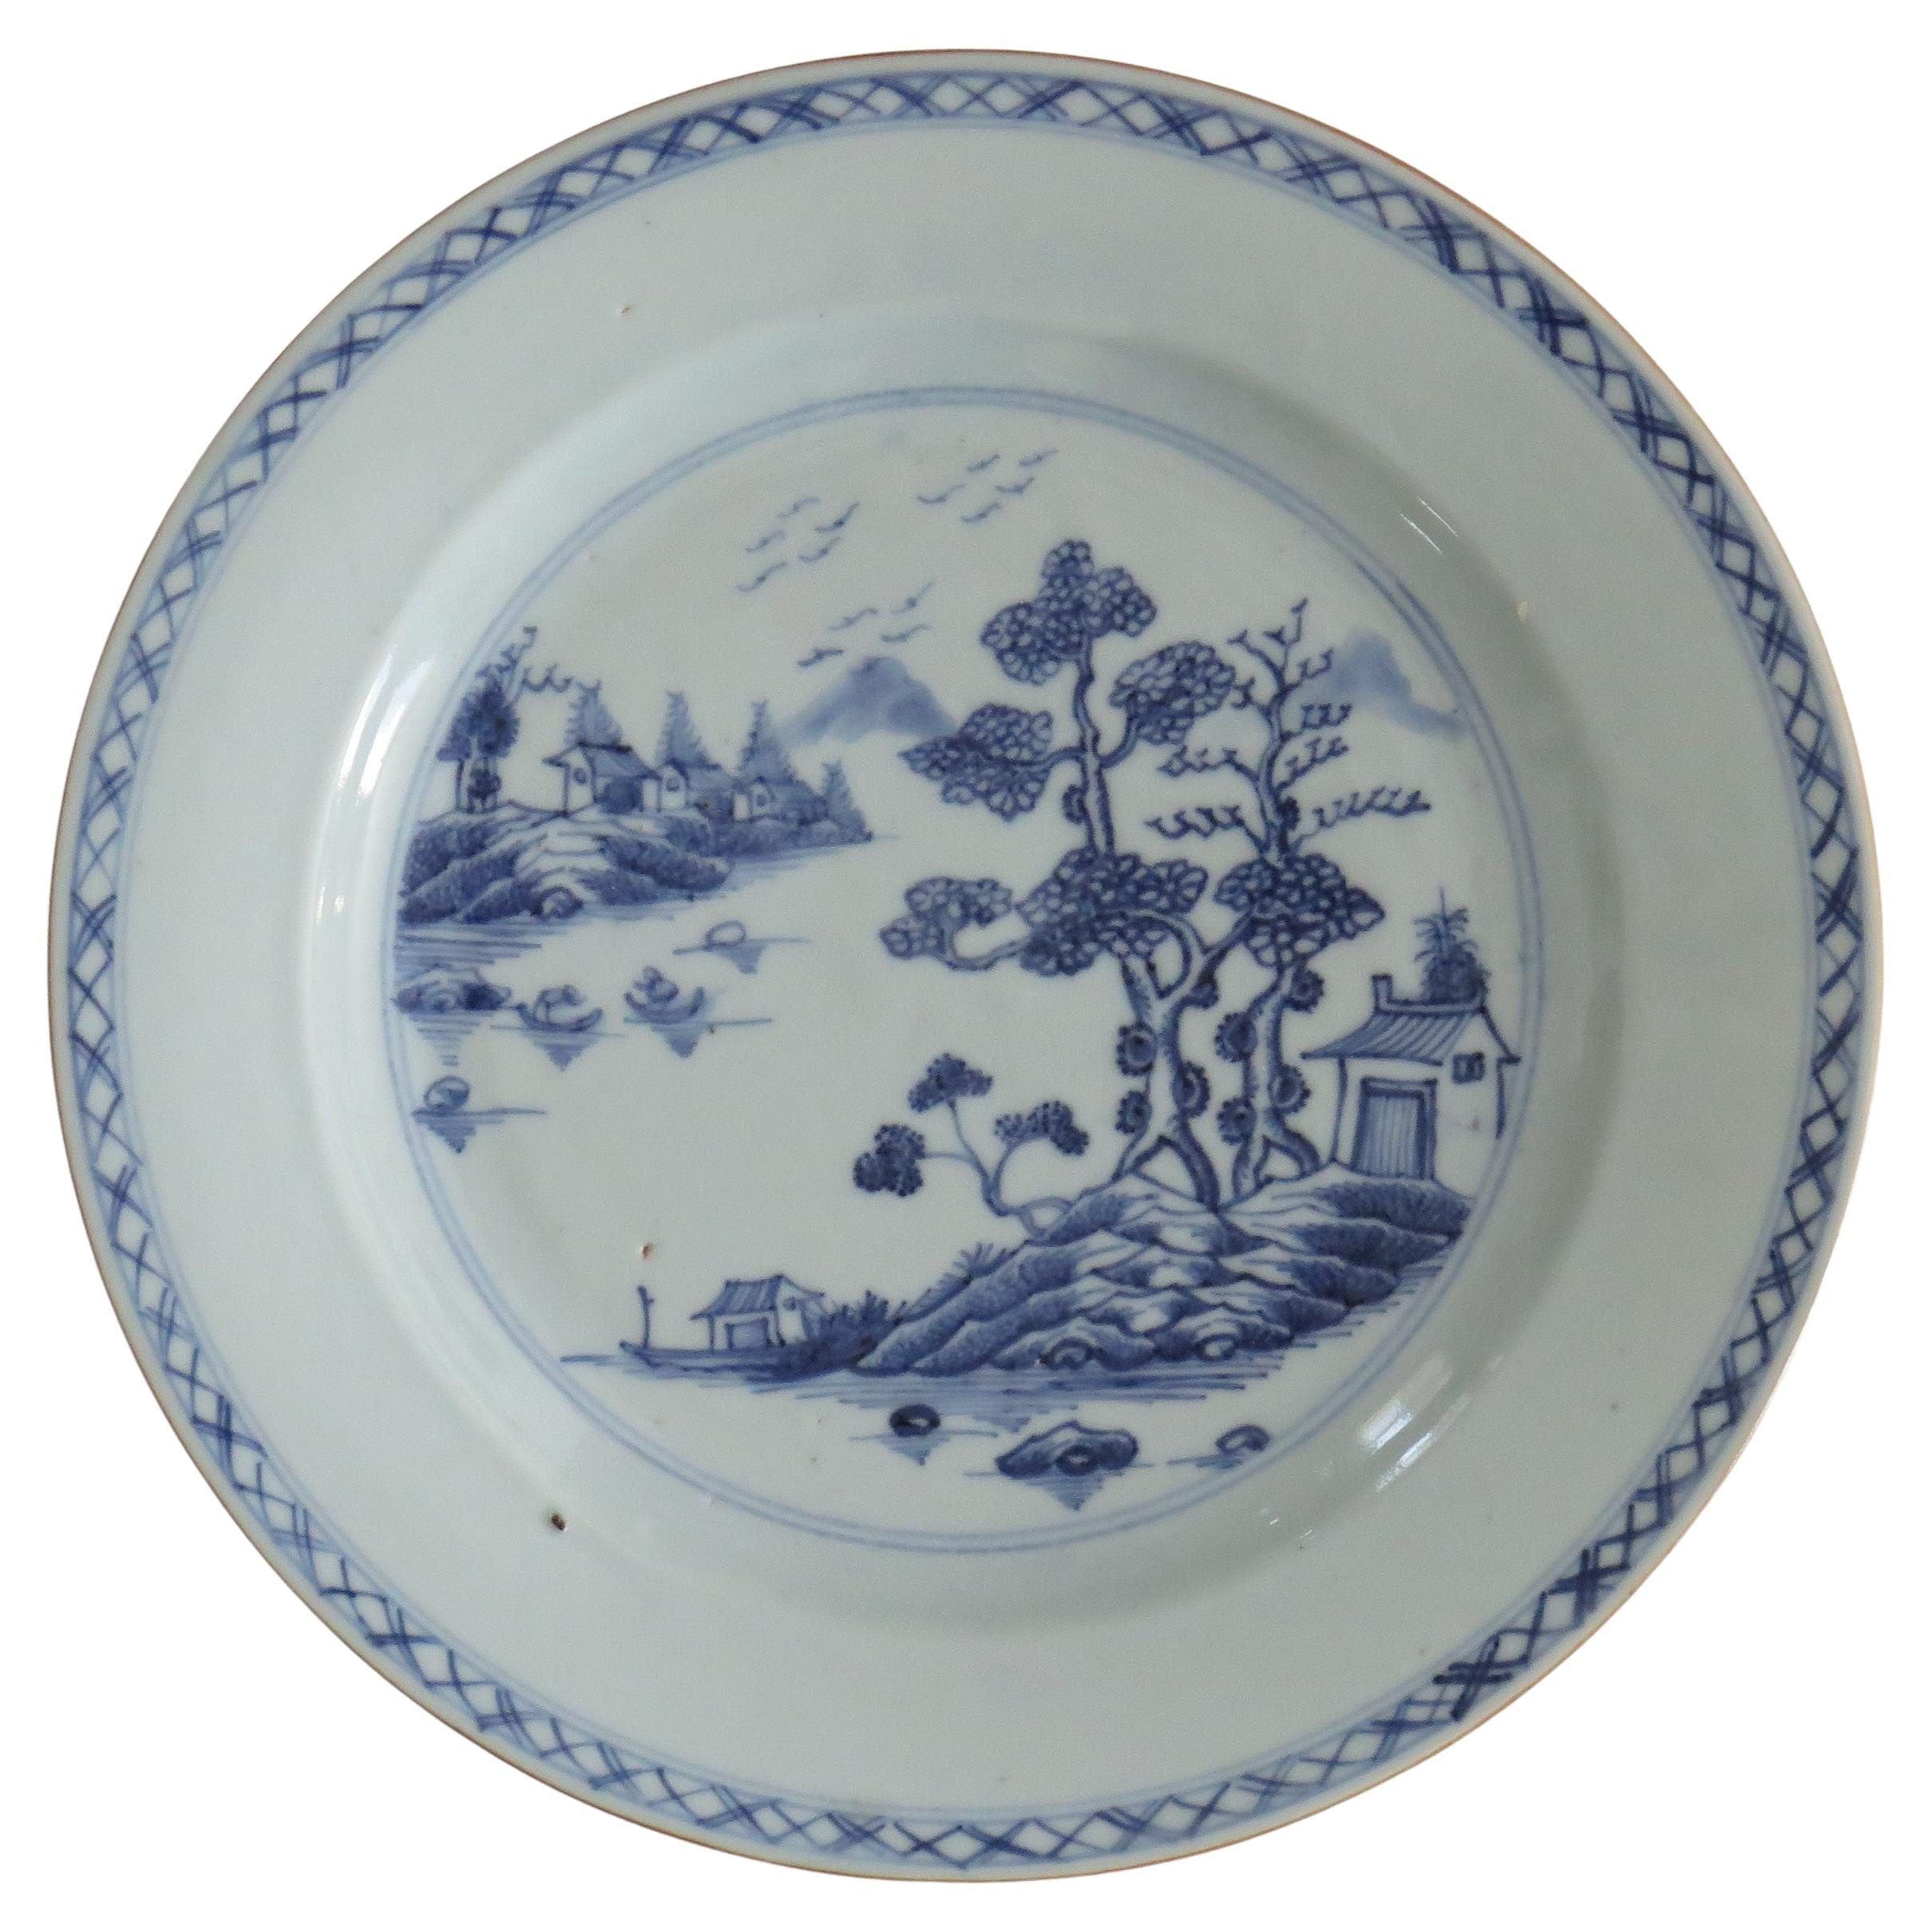 Chinesisches blau-weißes Porzellan des 18. Jahrhunderts, Qing Qianlong, um 1770